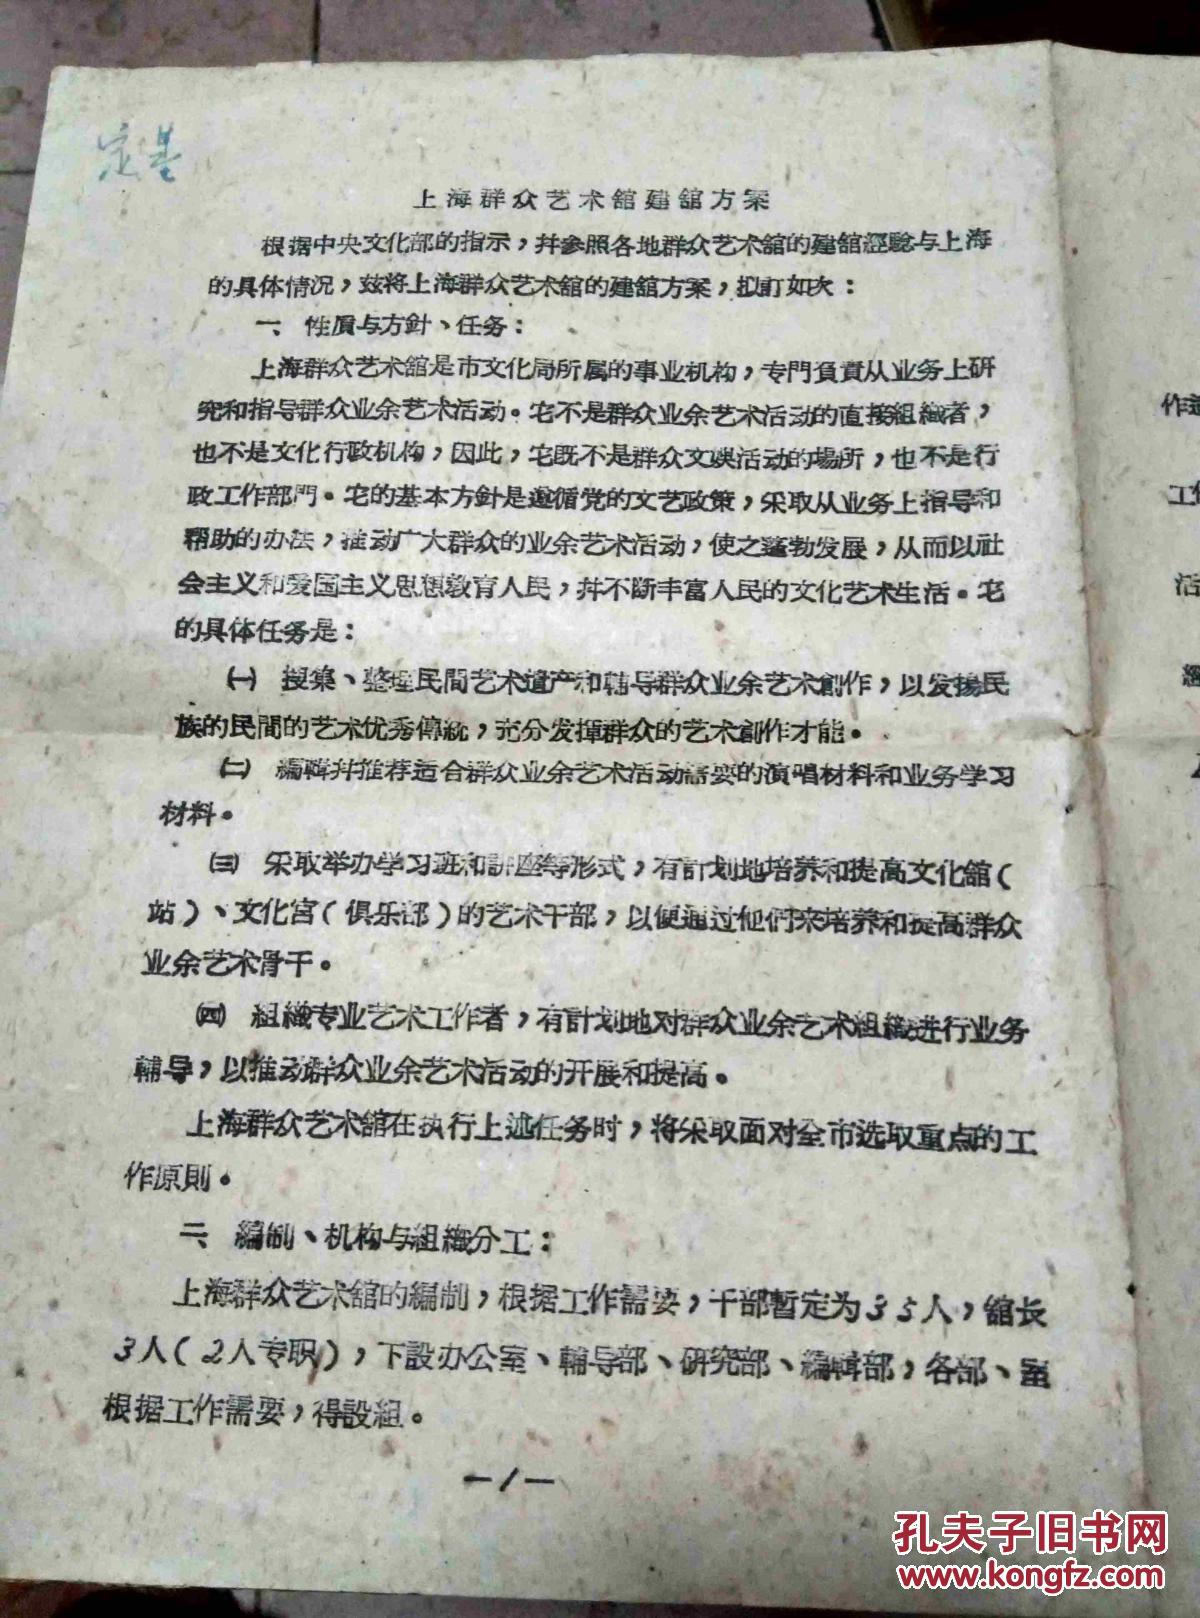 1956年12月31日           上海群众艺术馆建馆方案